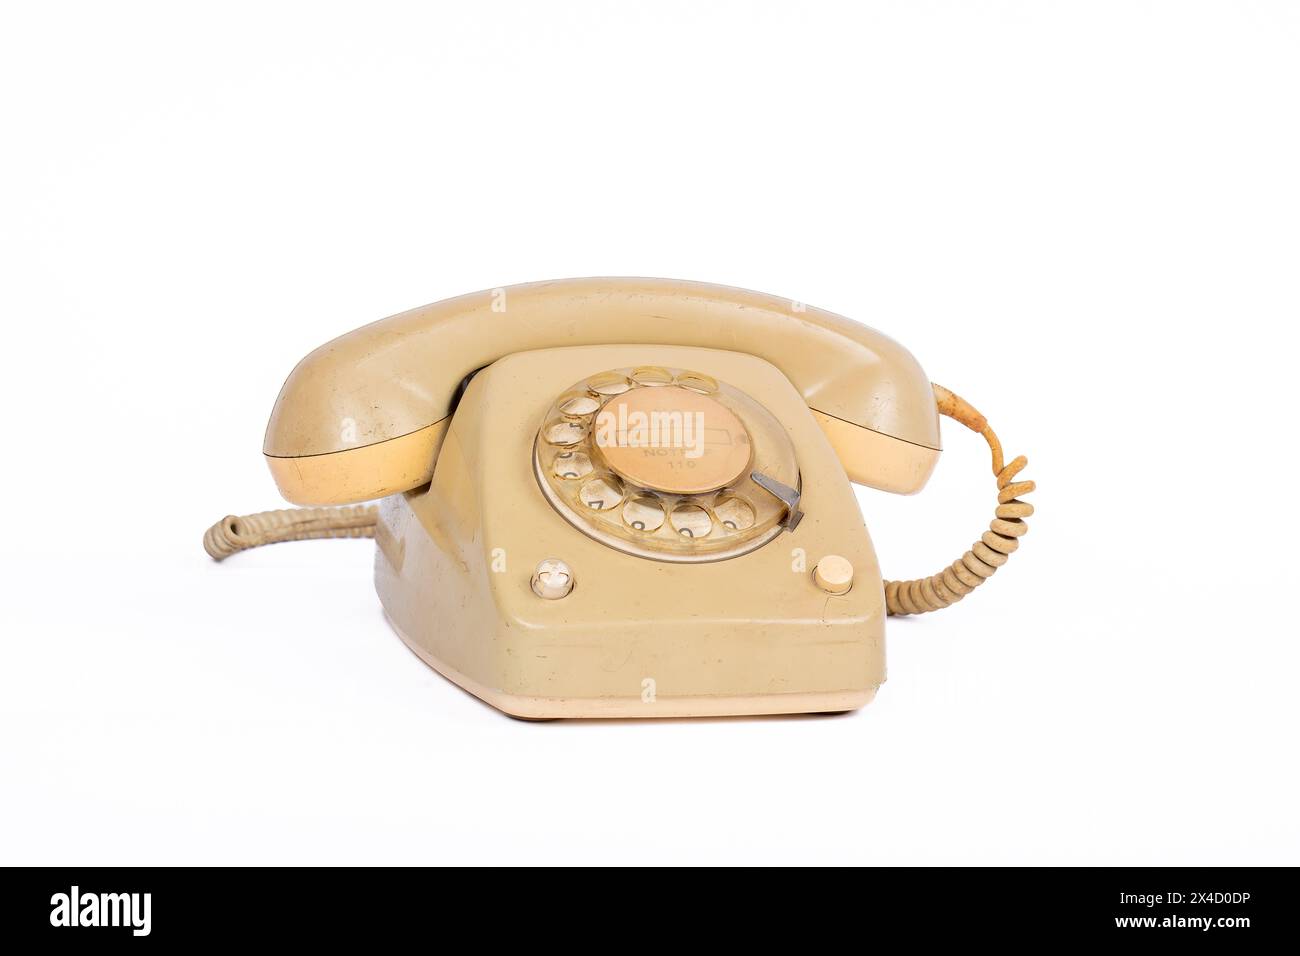 Telefono rotante sporco vintage su sfondo bianco - dispositivo di comunicazione retro Foto Stock